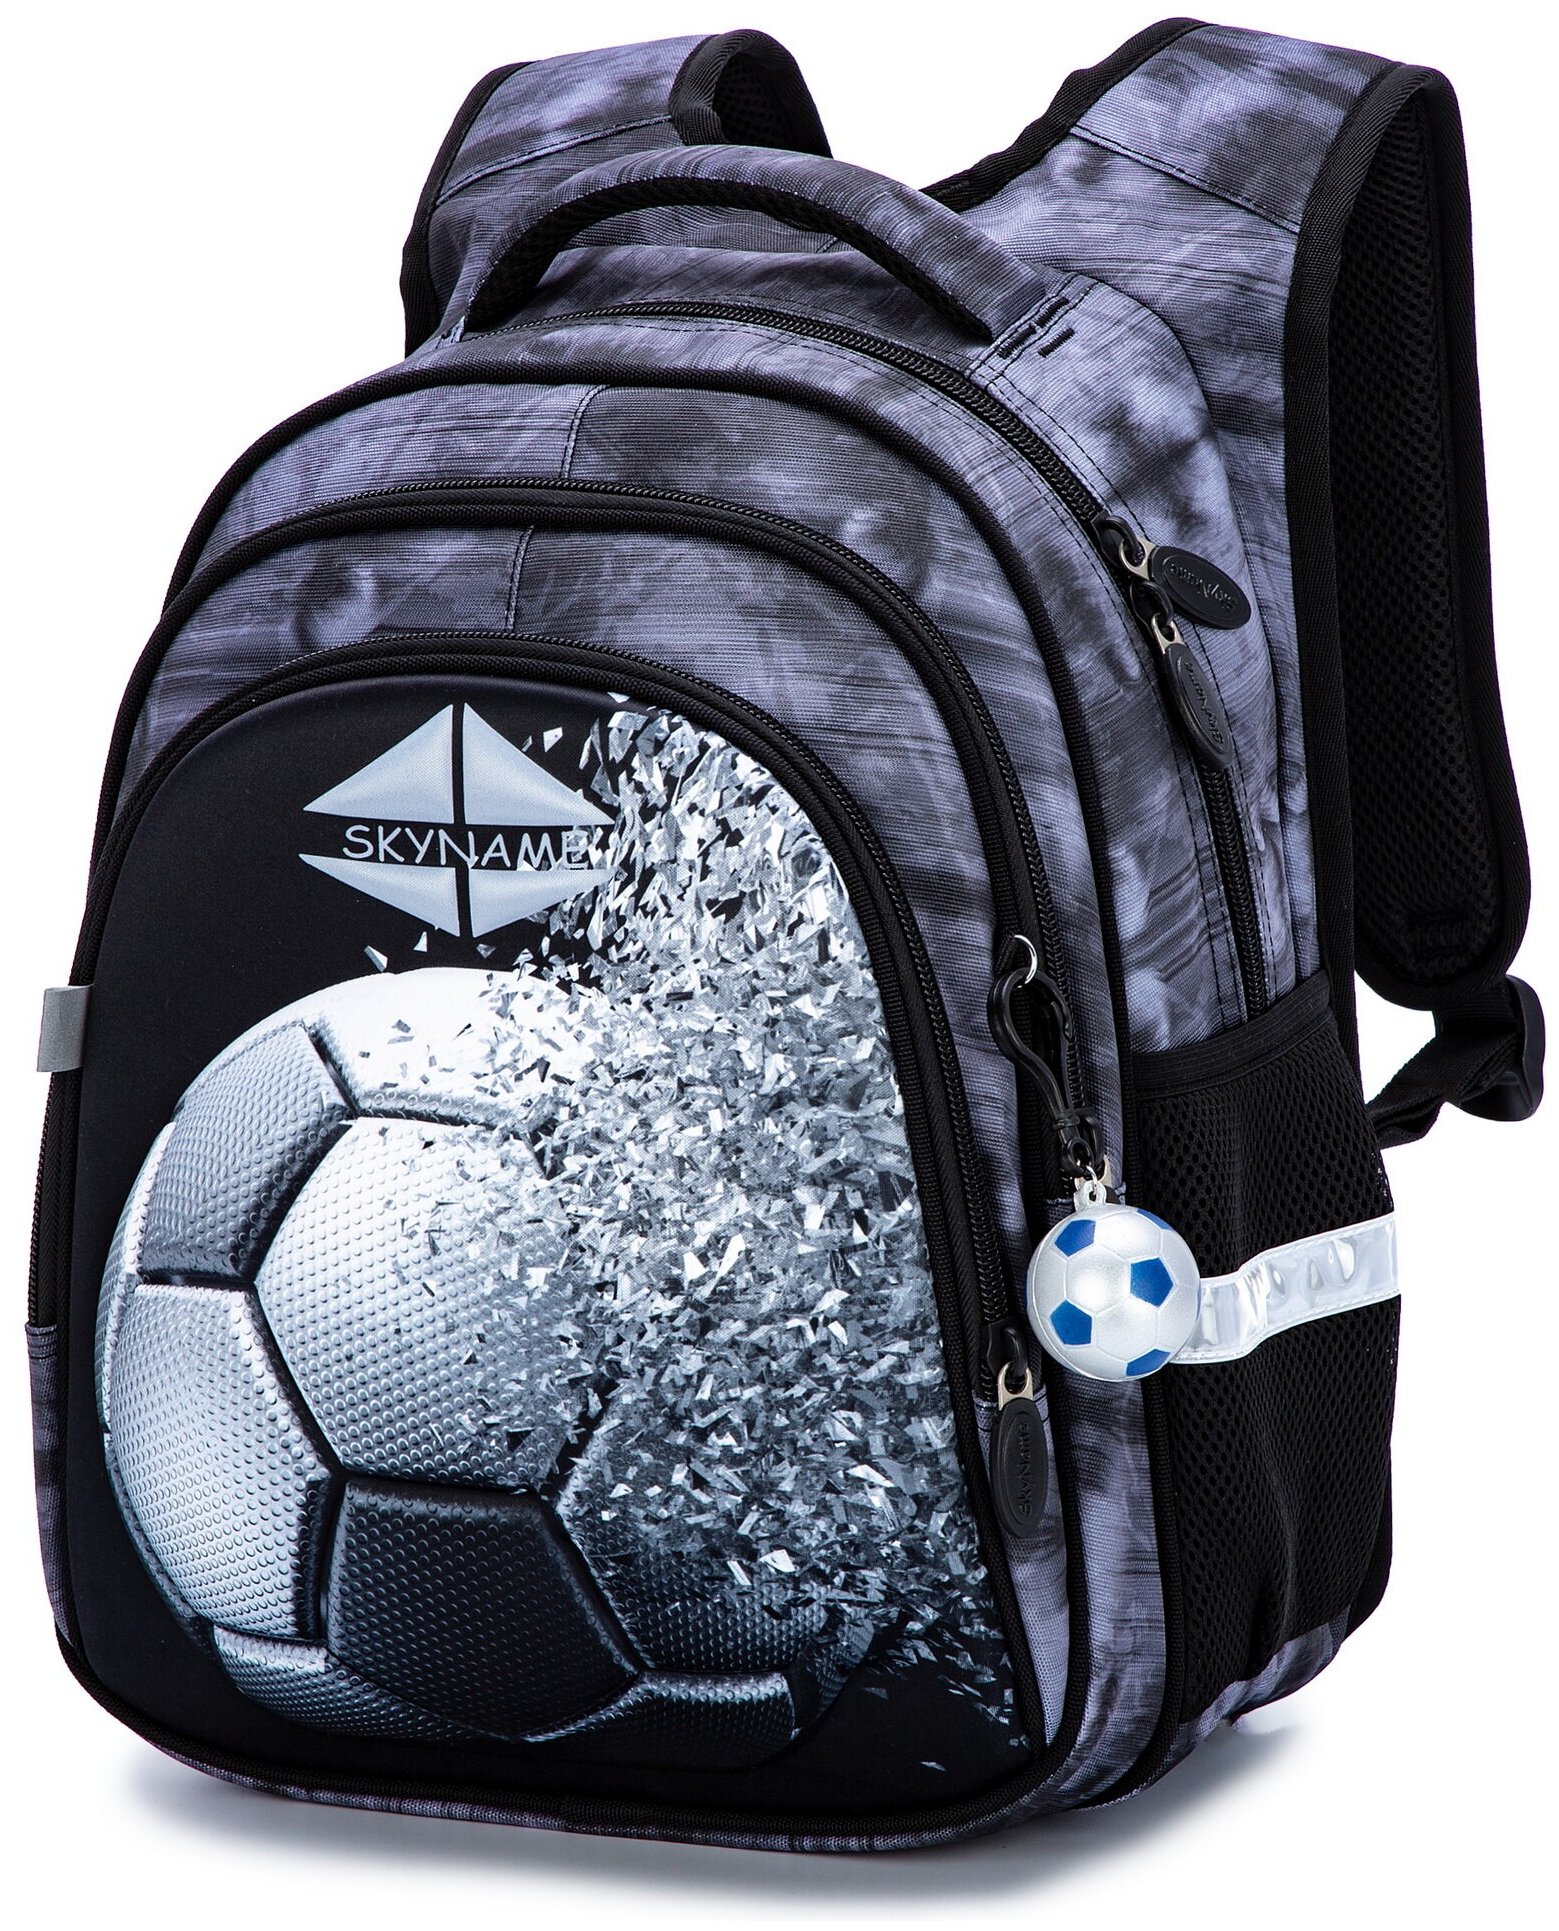 Рюкзак школьный для мальчика с анатомической спинкой для начальной школы, 17.3 л, SkyName (СкайНейм), + брелок мячик